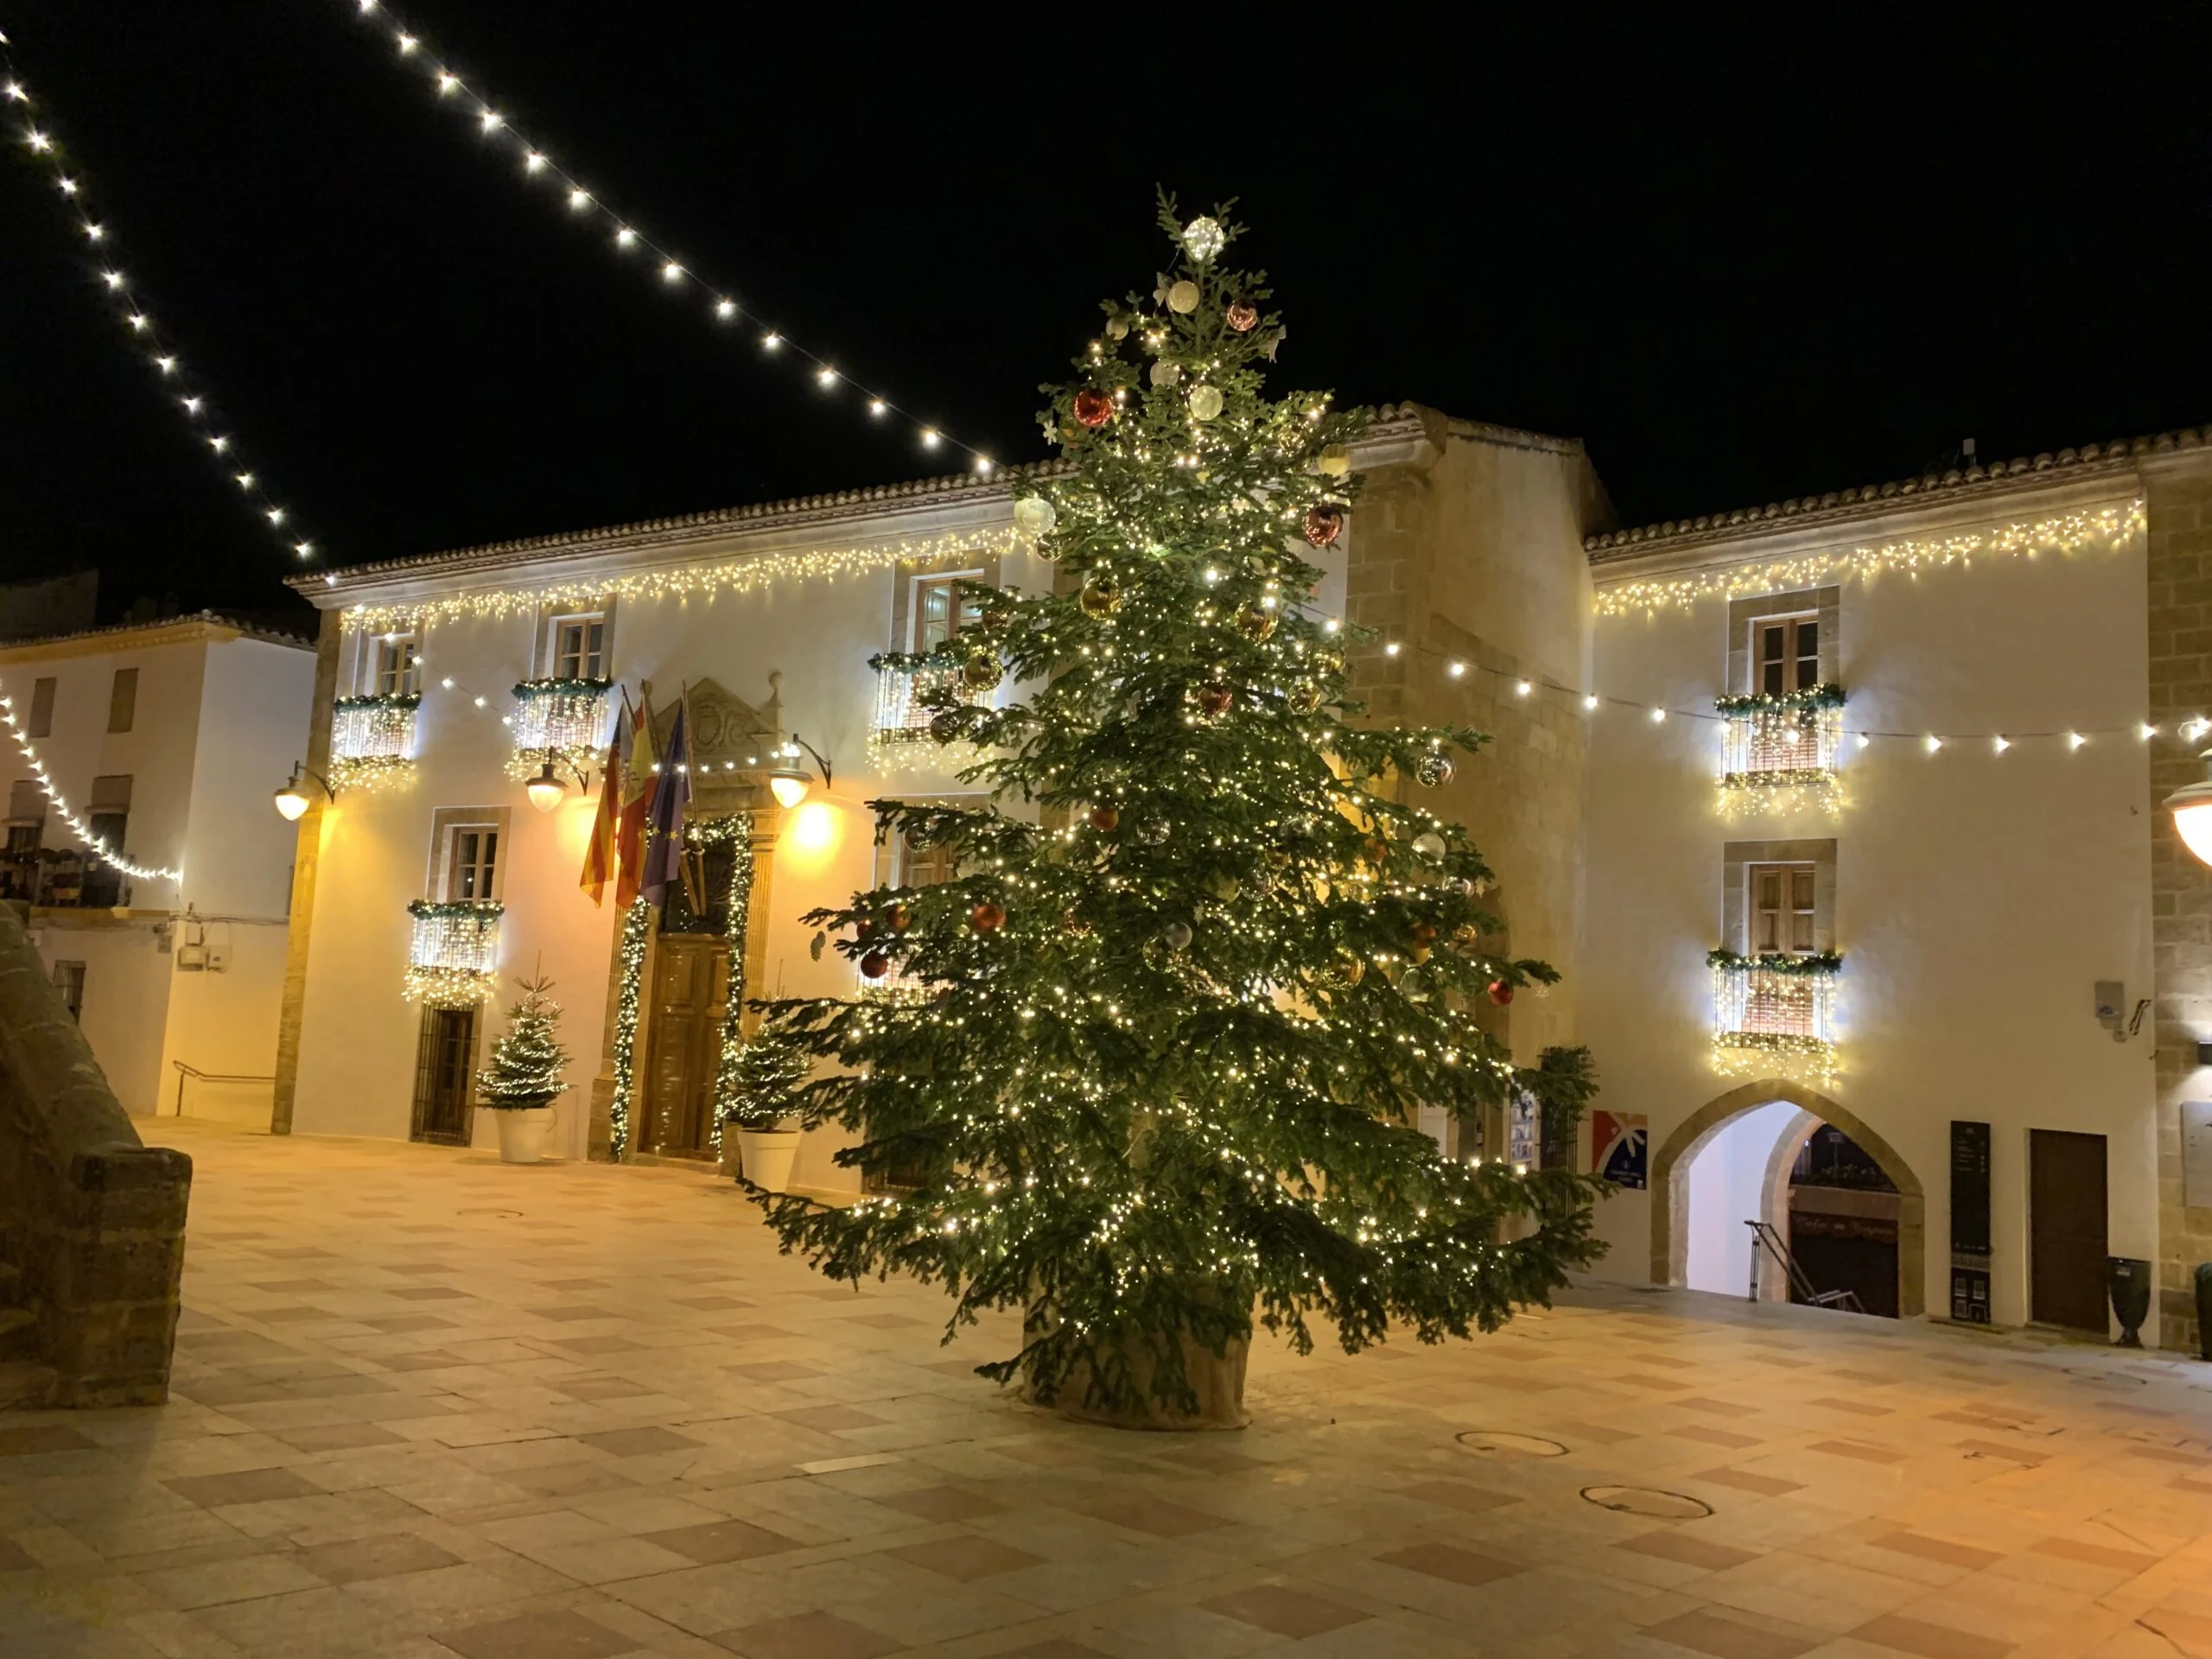 El centro histórico se ilumina con la llegada de la Navidad